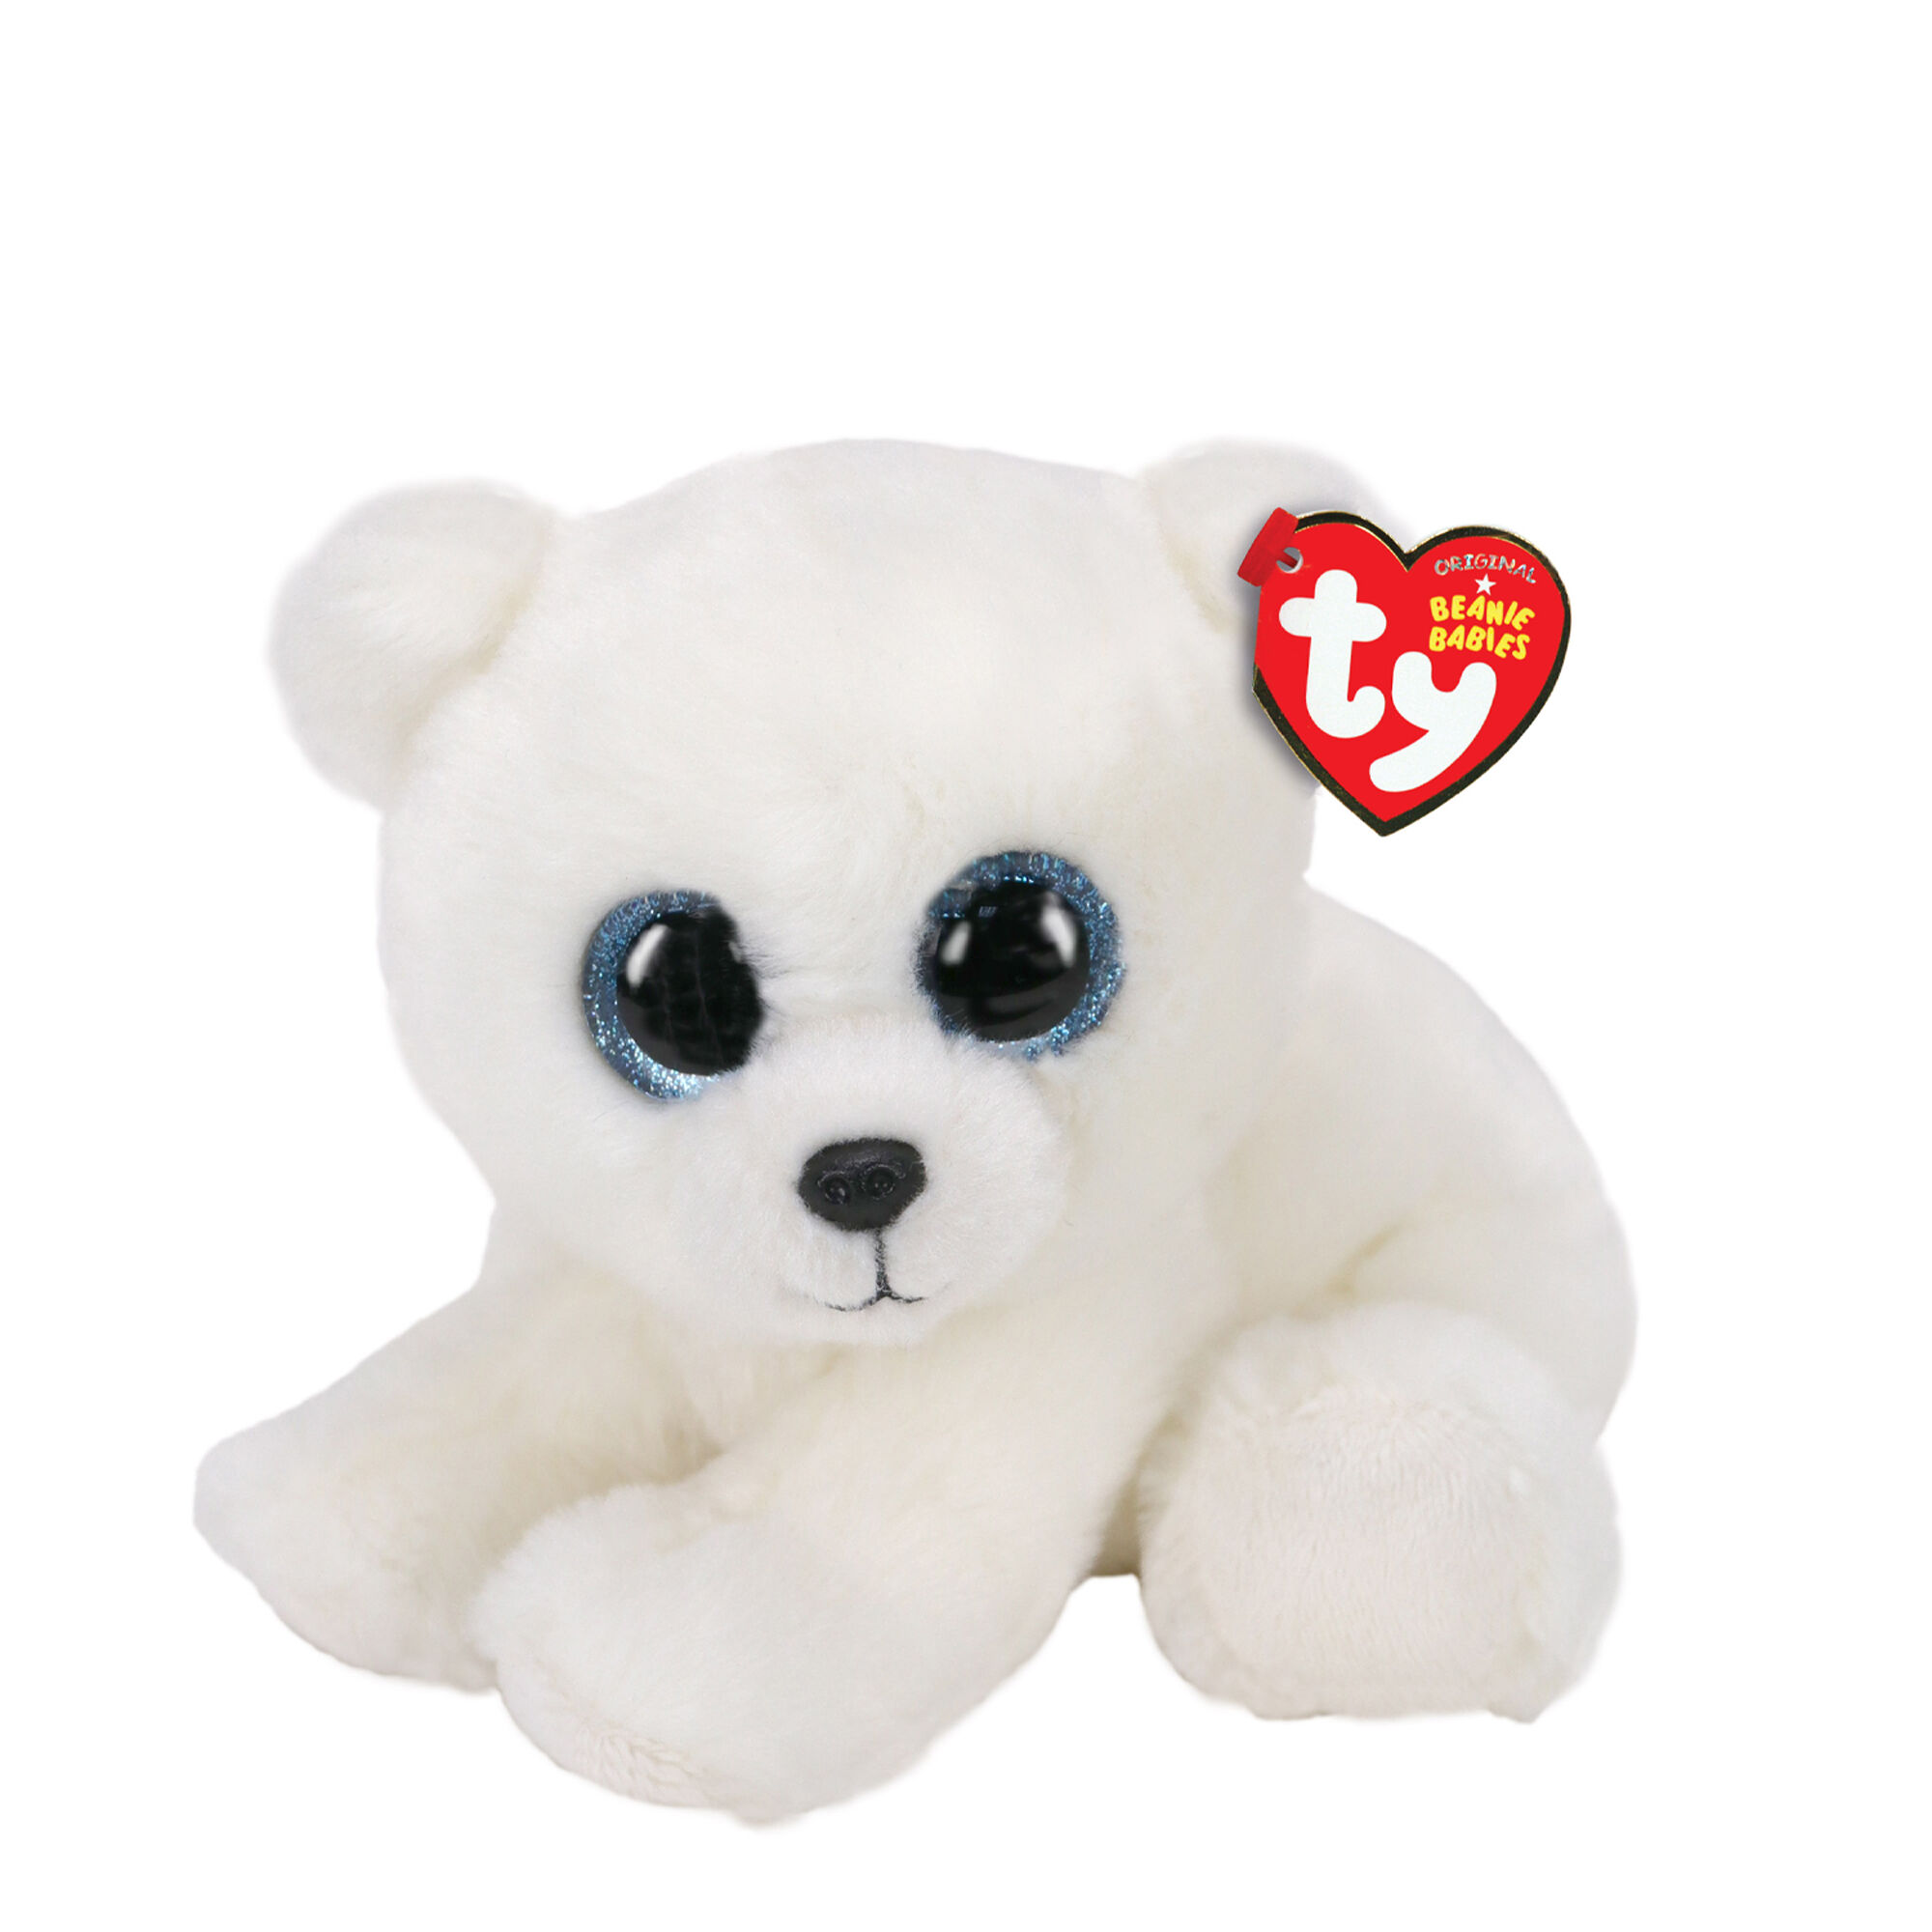 NEW Ty Beanie Baby  ICE BOX  Polar Bear with Ribbon FREE SHIPPING 